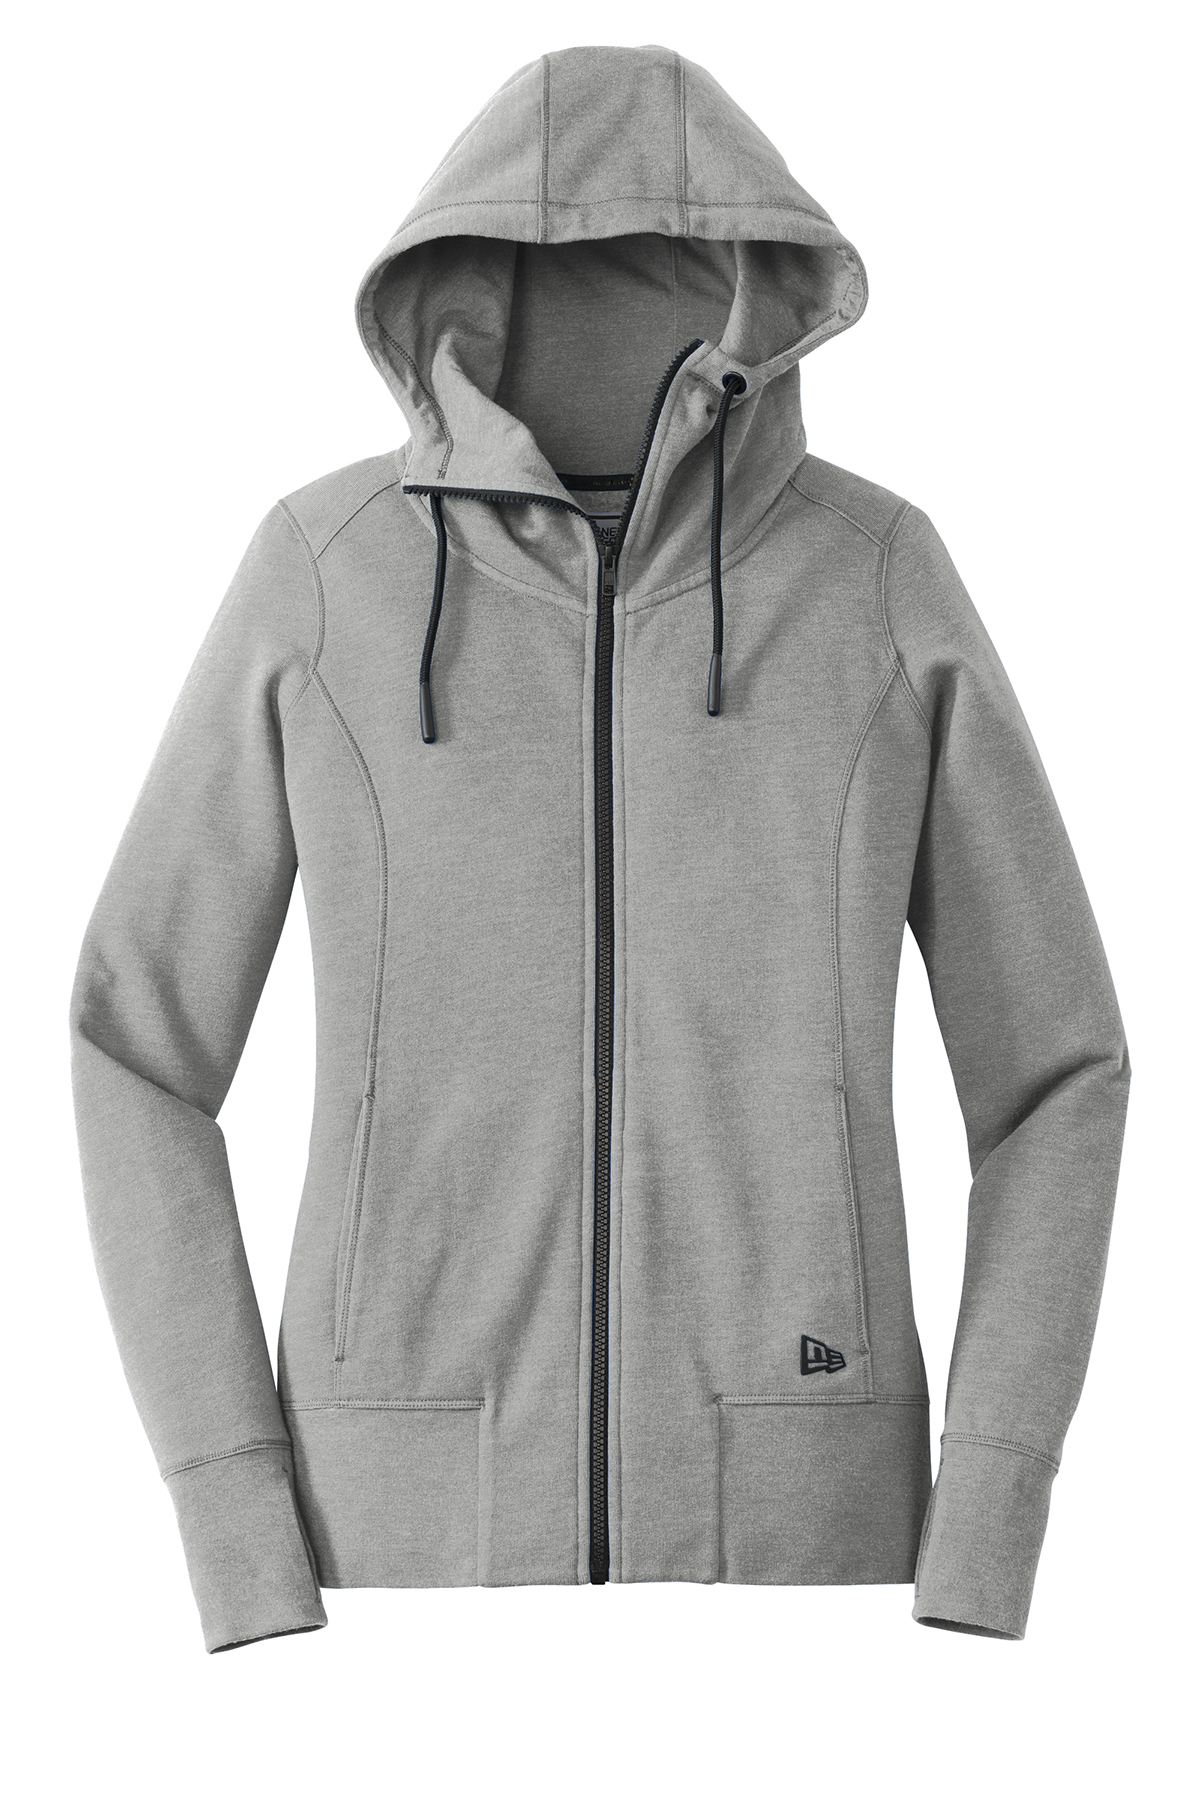 New Era ® Ladies Tri-Blend Fleece Full-Zip Hoodie | Product | SanMar